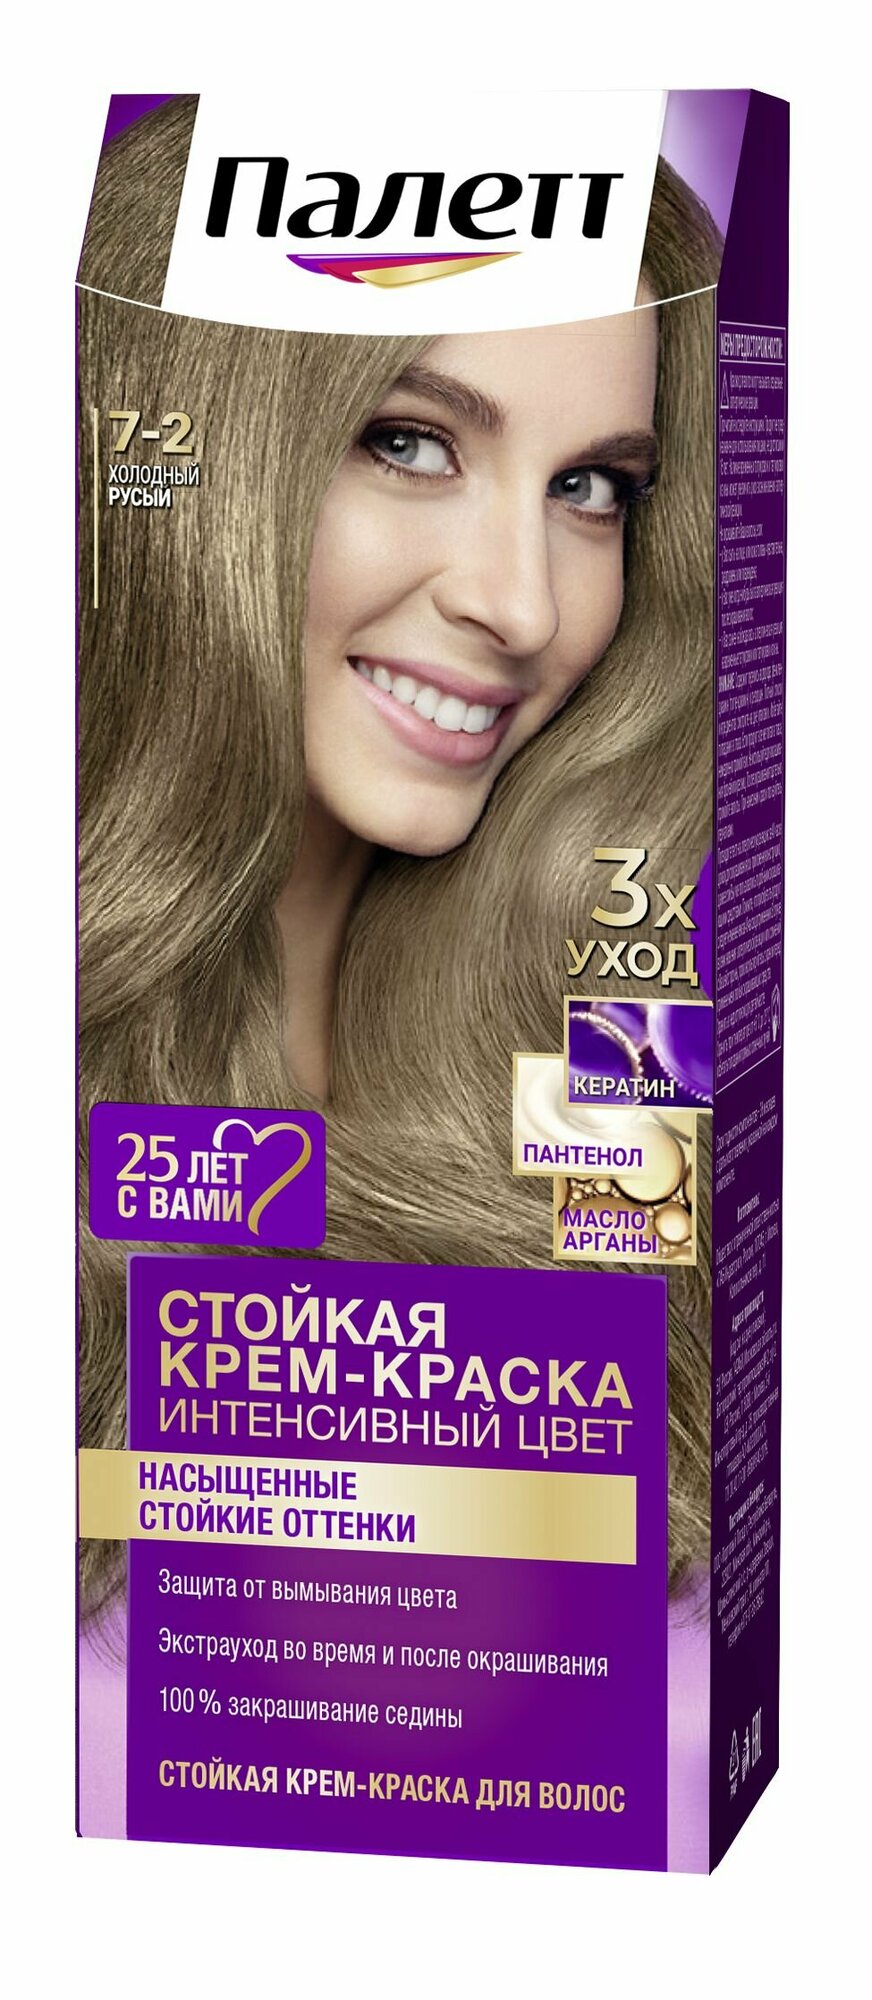 Стойкая крем-краска для волос Palette Палетт № 7-2 Холодный русый